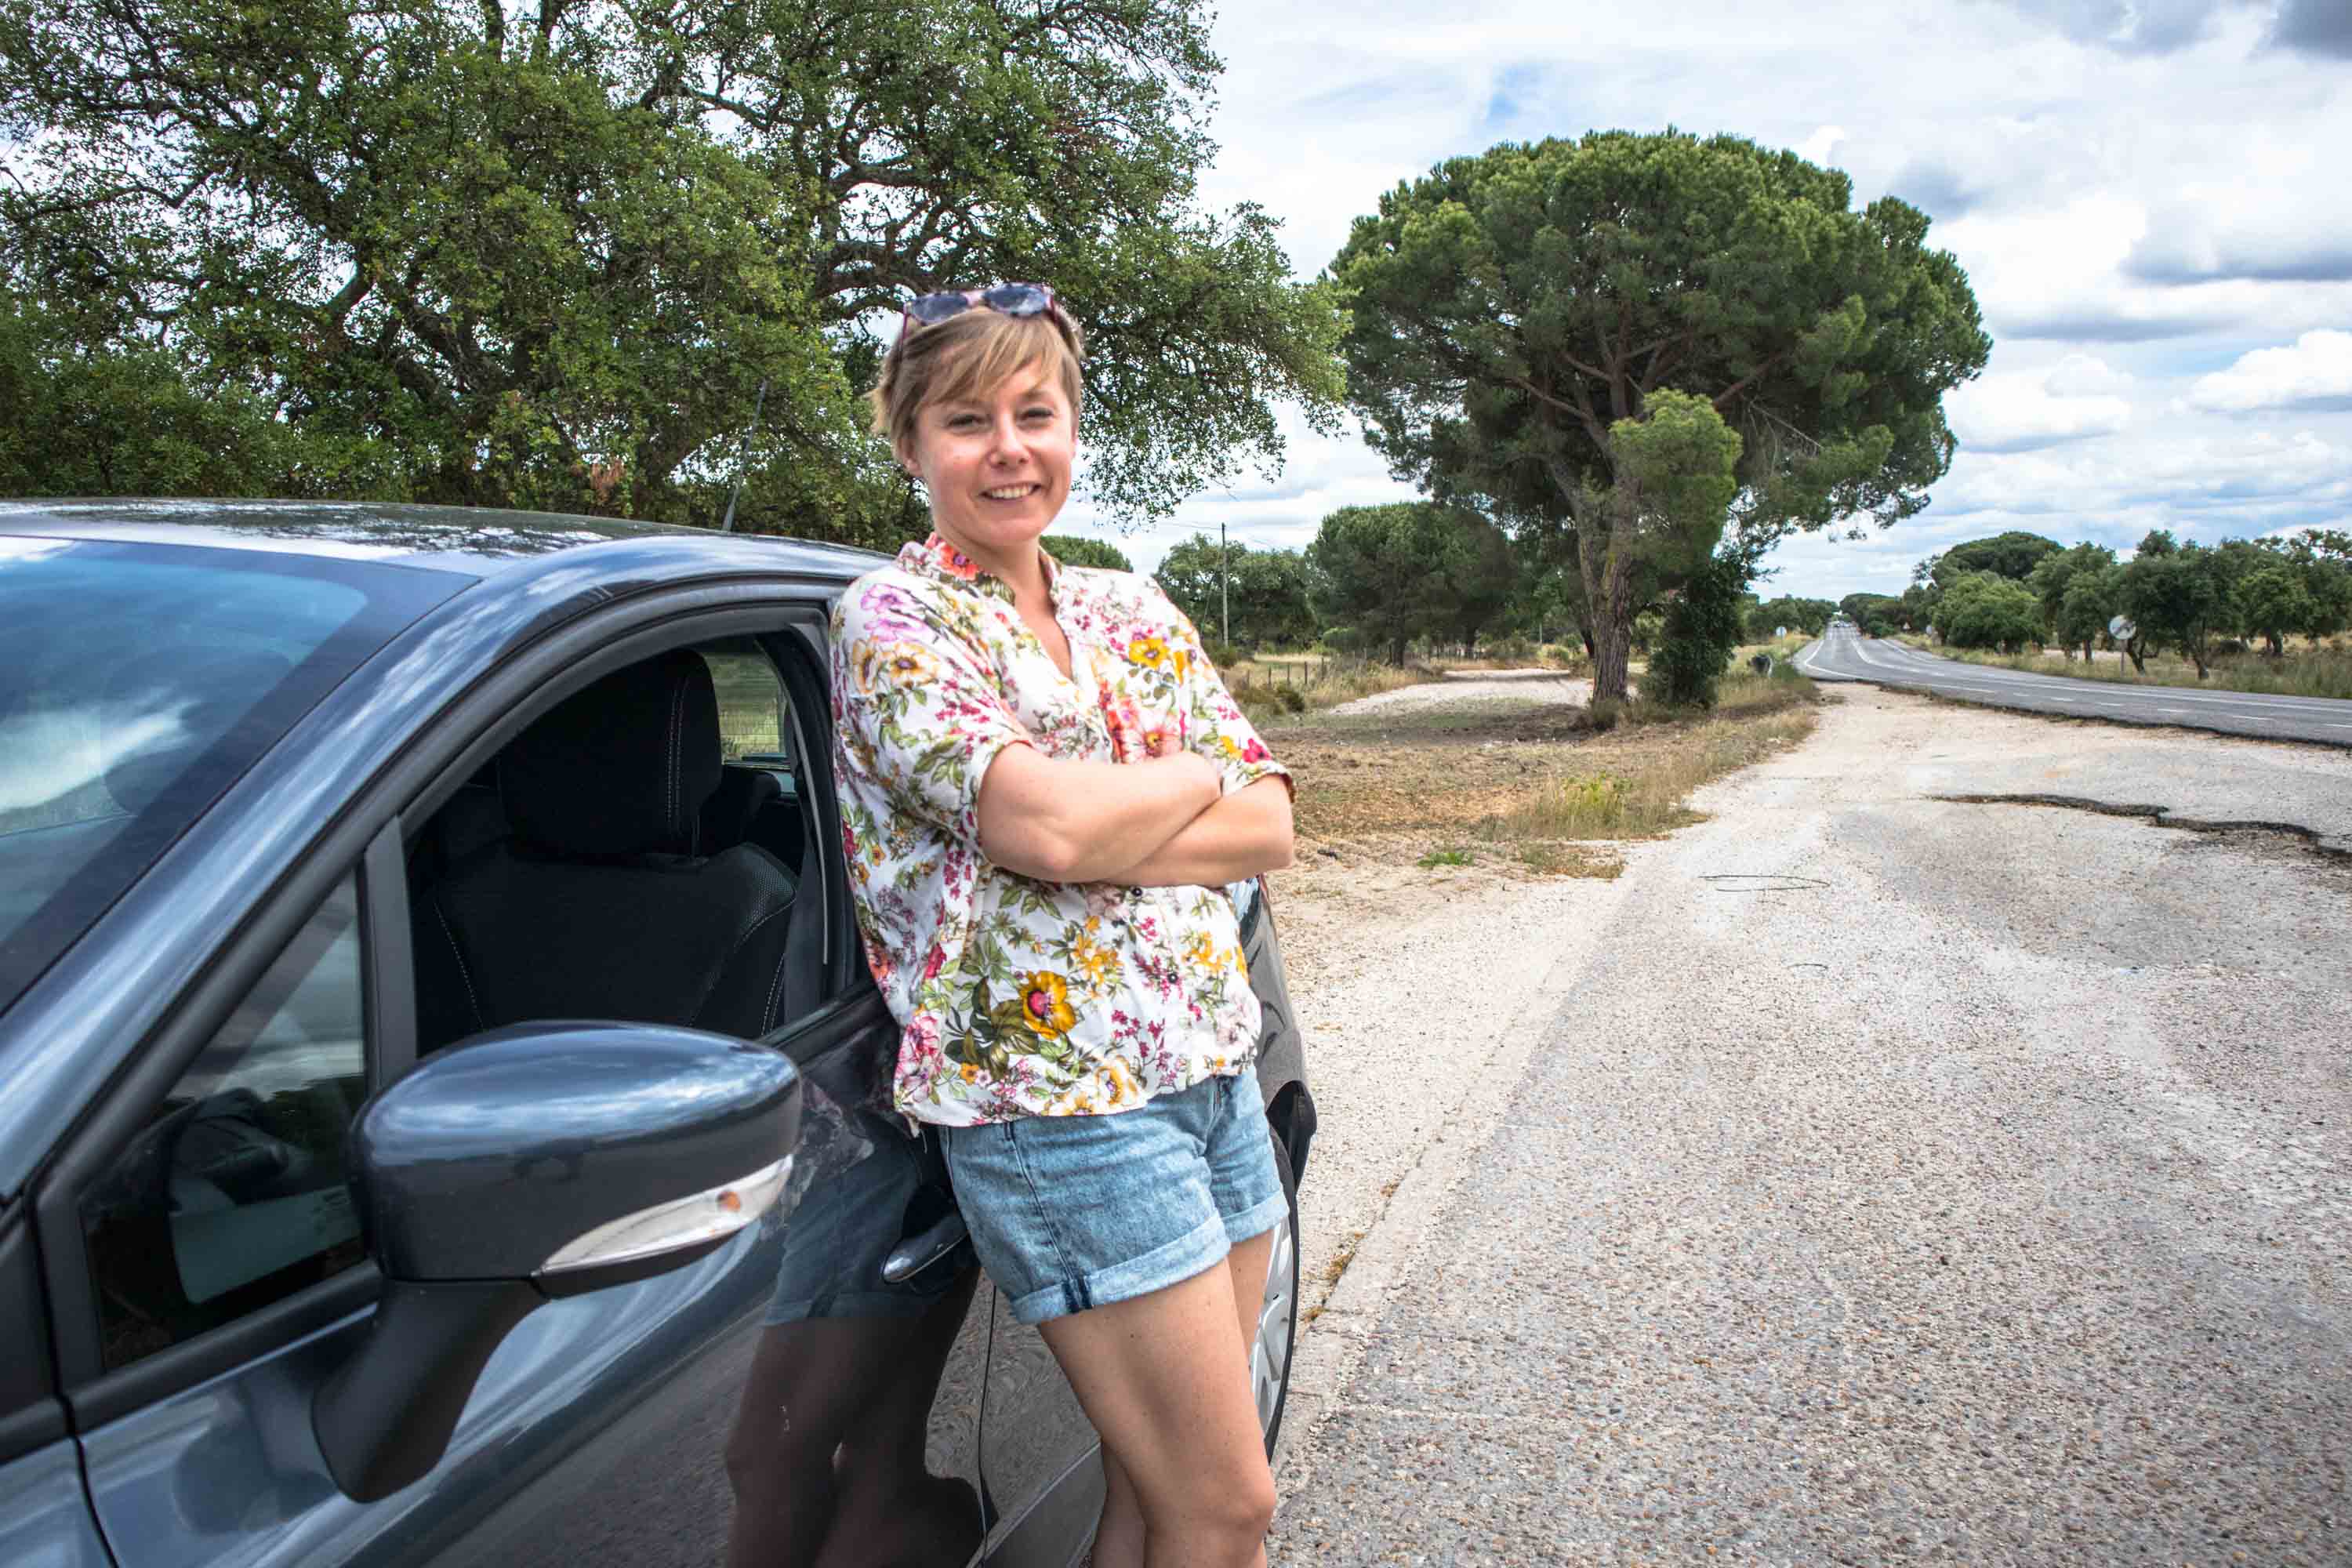 Jak Tanio I Szybko Wynająć Samochód W Portugalii? | The Blond Travels